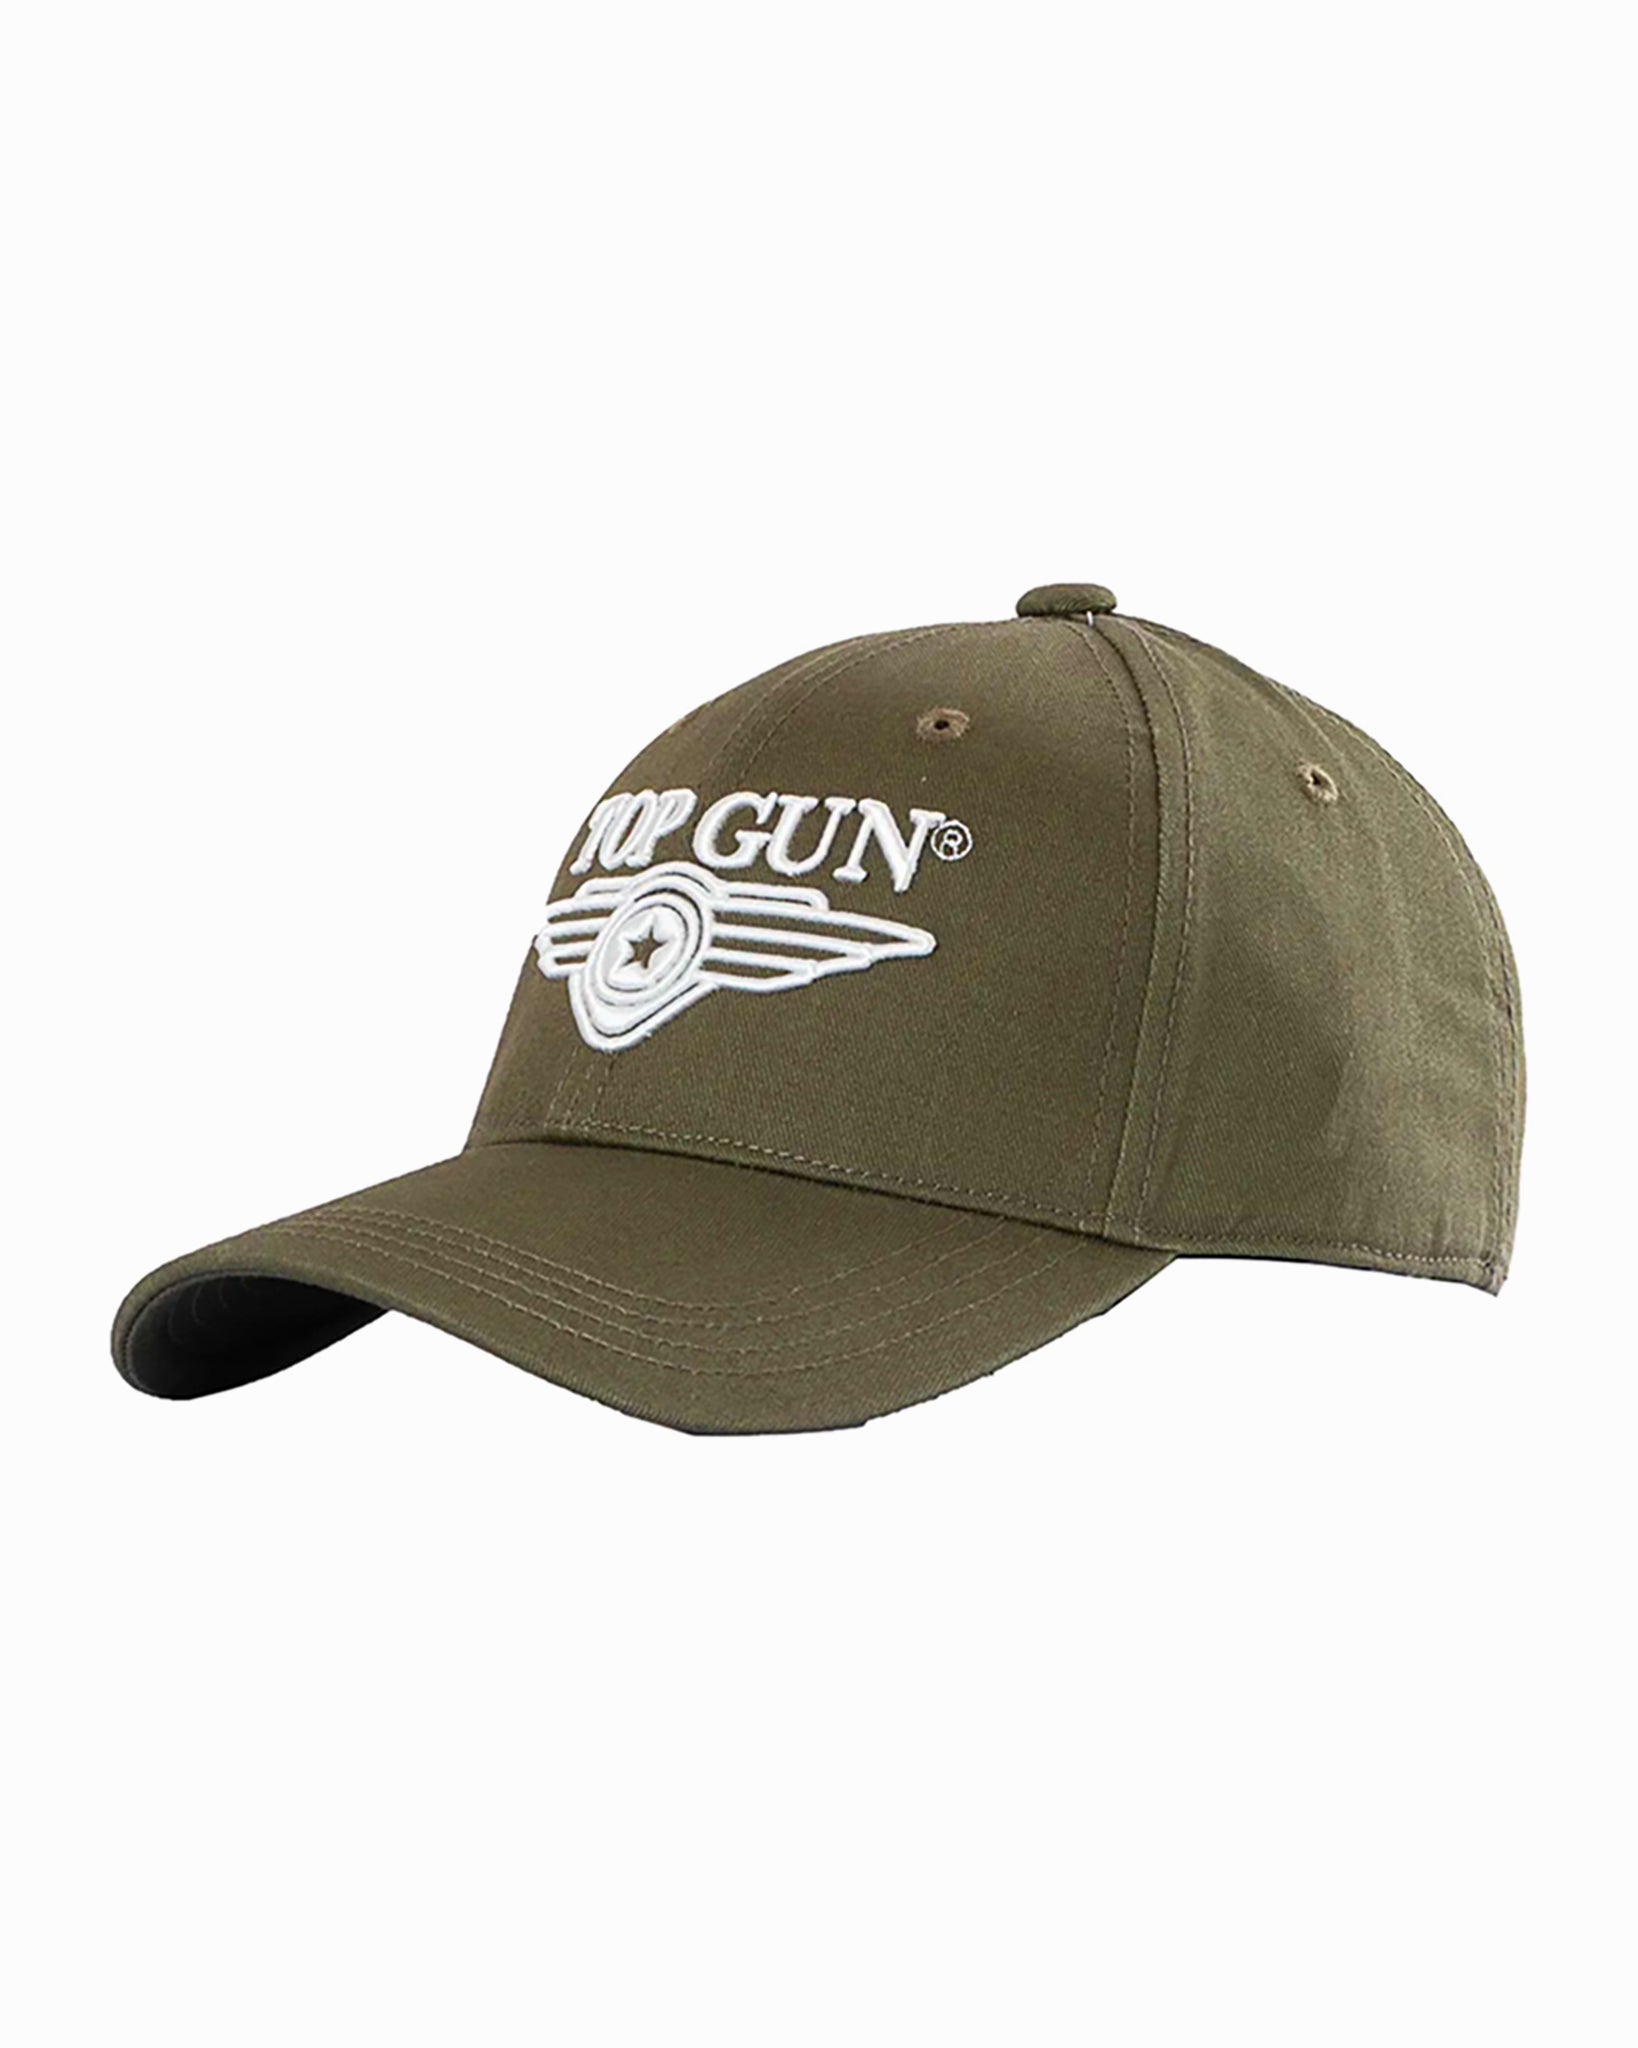 Top 3D LOGO CAP Gun Store TOP – GUN® WINGS